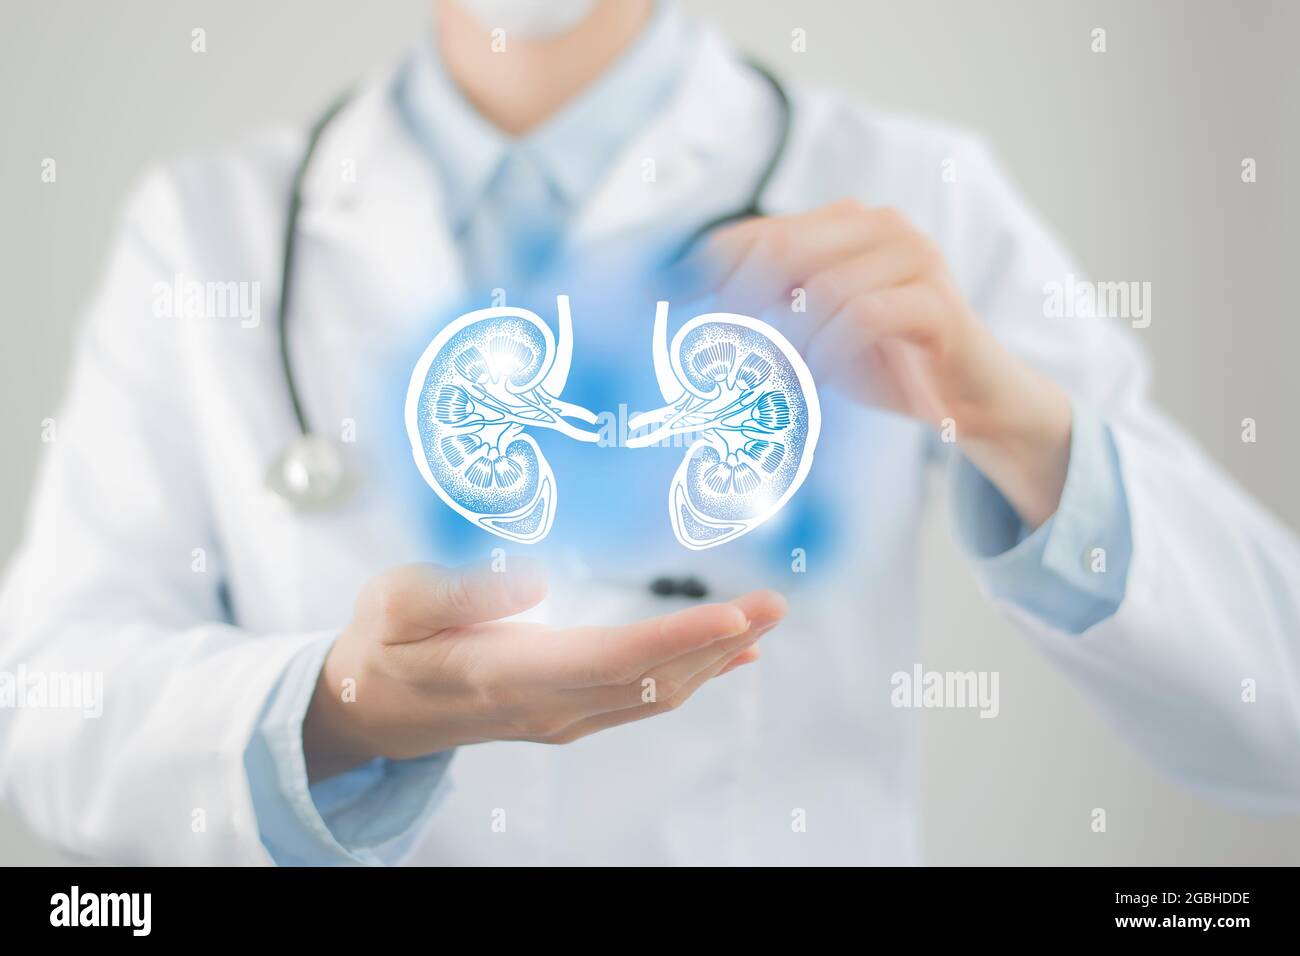 Ärztin hält virtuelle Nieren in der Hand. Handgezeichnetes menschliches Organ, verschwommenes Foto, rohe Farben. Healthcare Krankenhaus Service Konzept Stock Foto Stockfoto